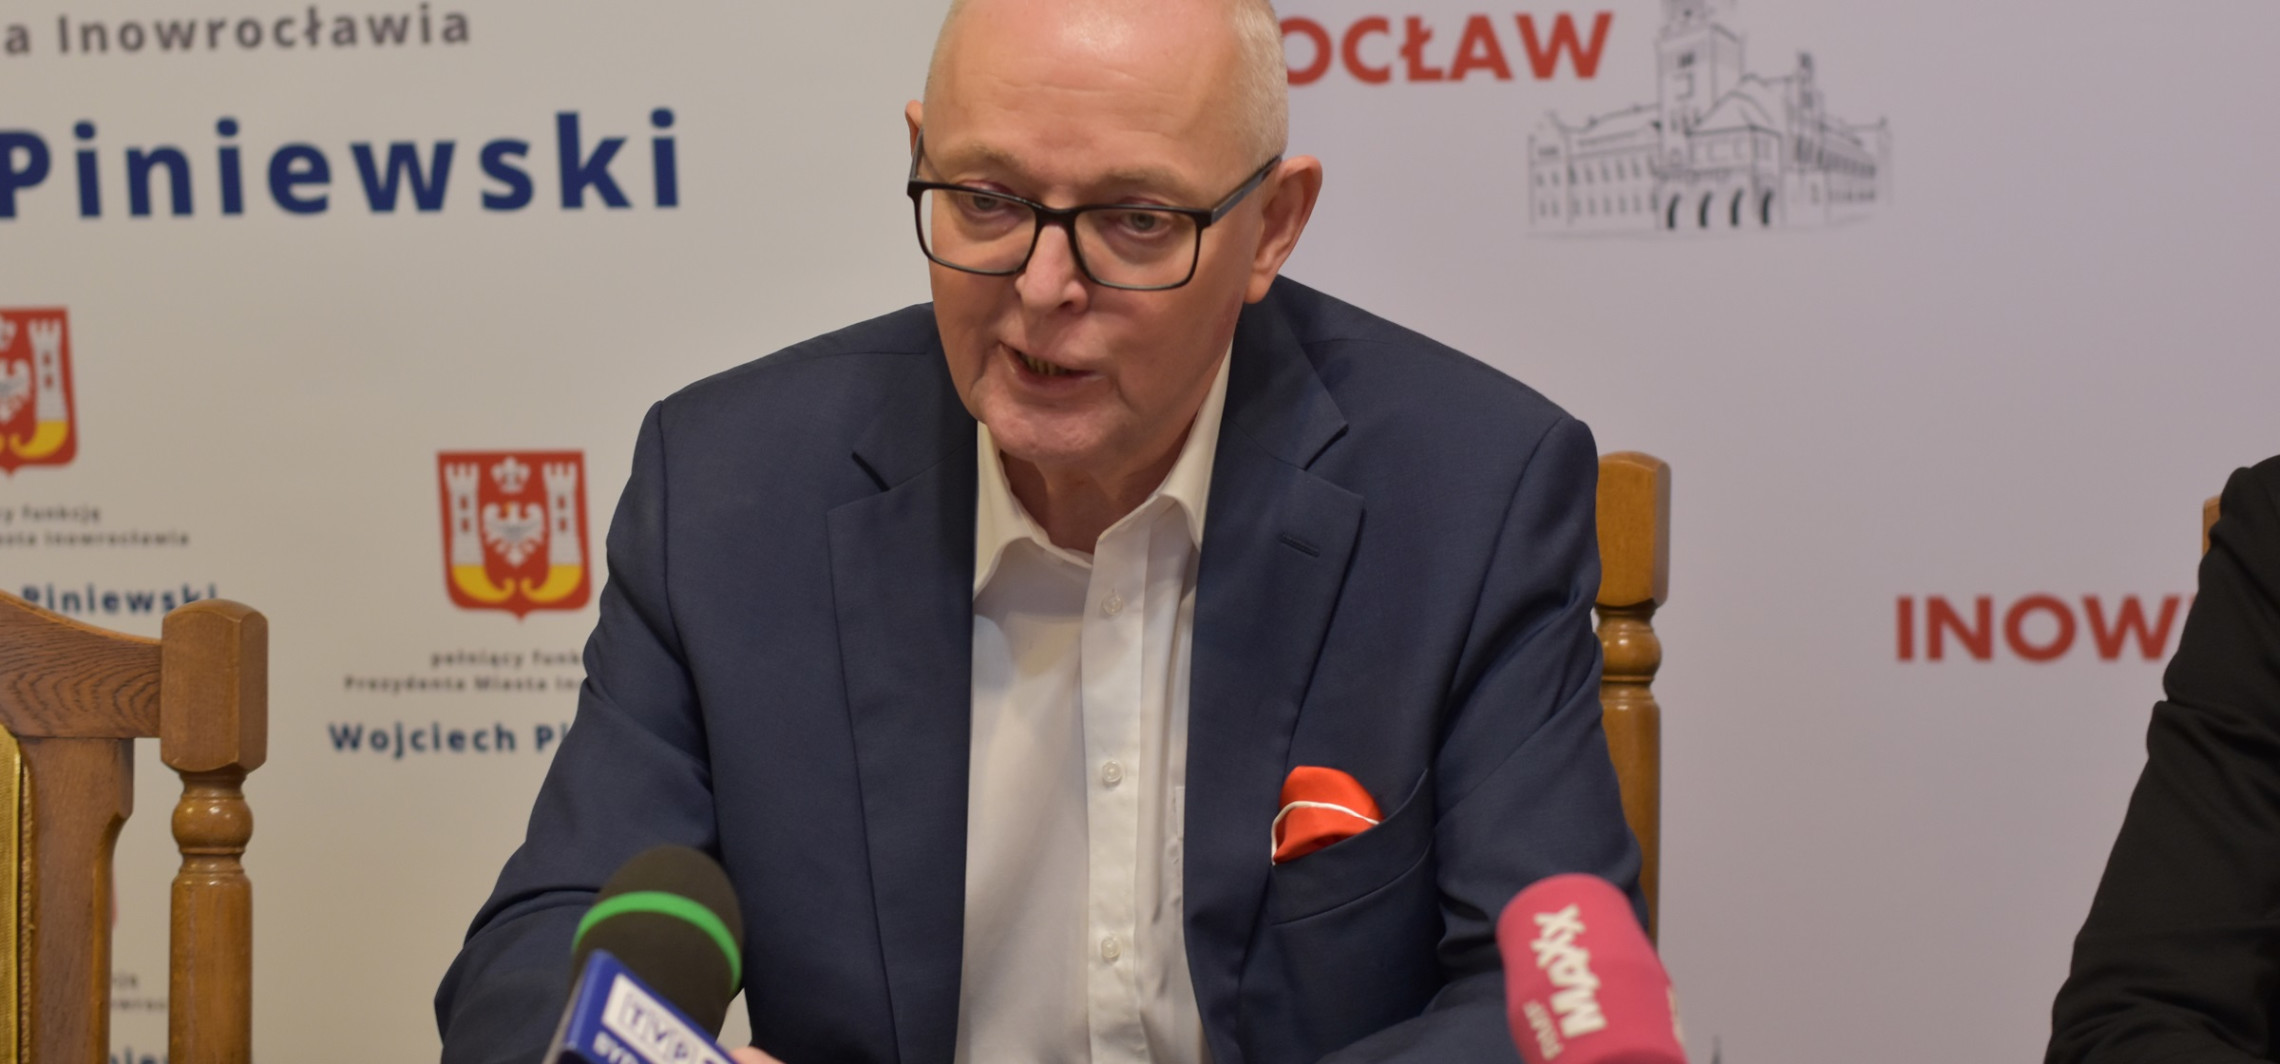 Inowrocław - Wojciech Piniewski podjął decyzję ws. Ewy Koman